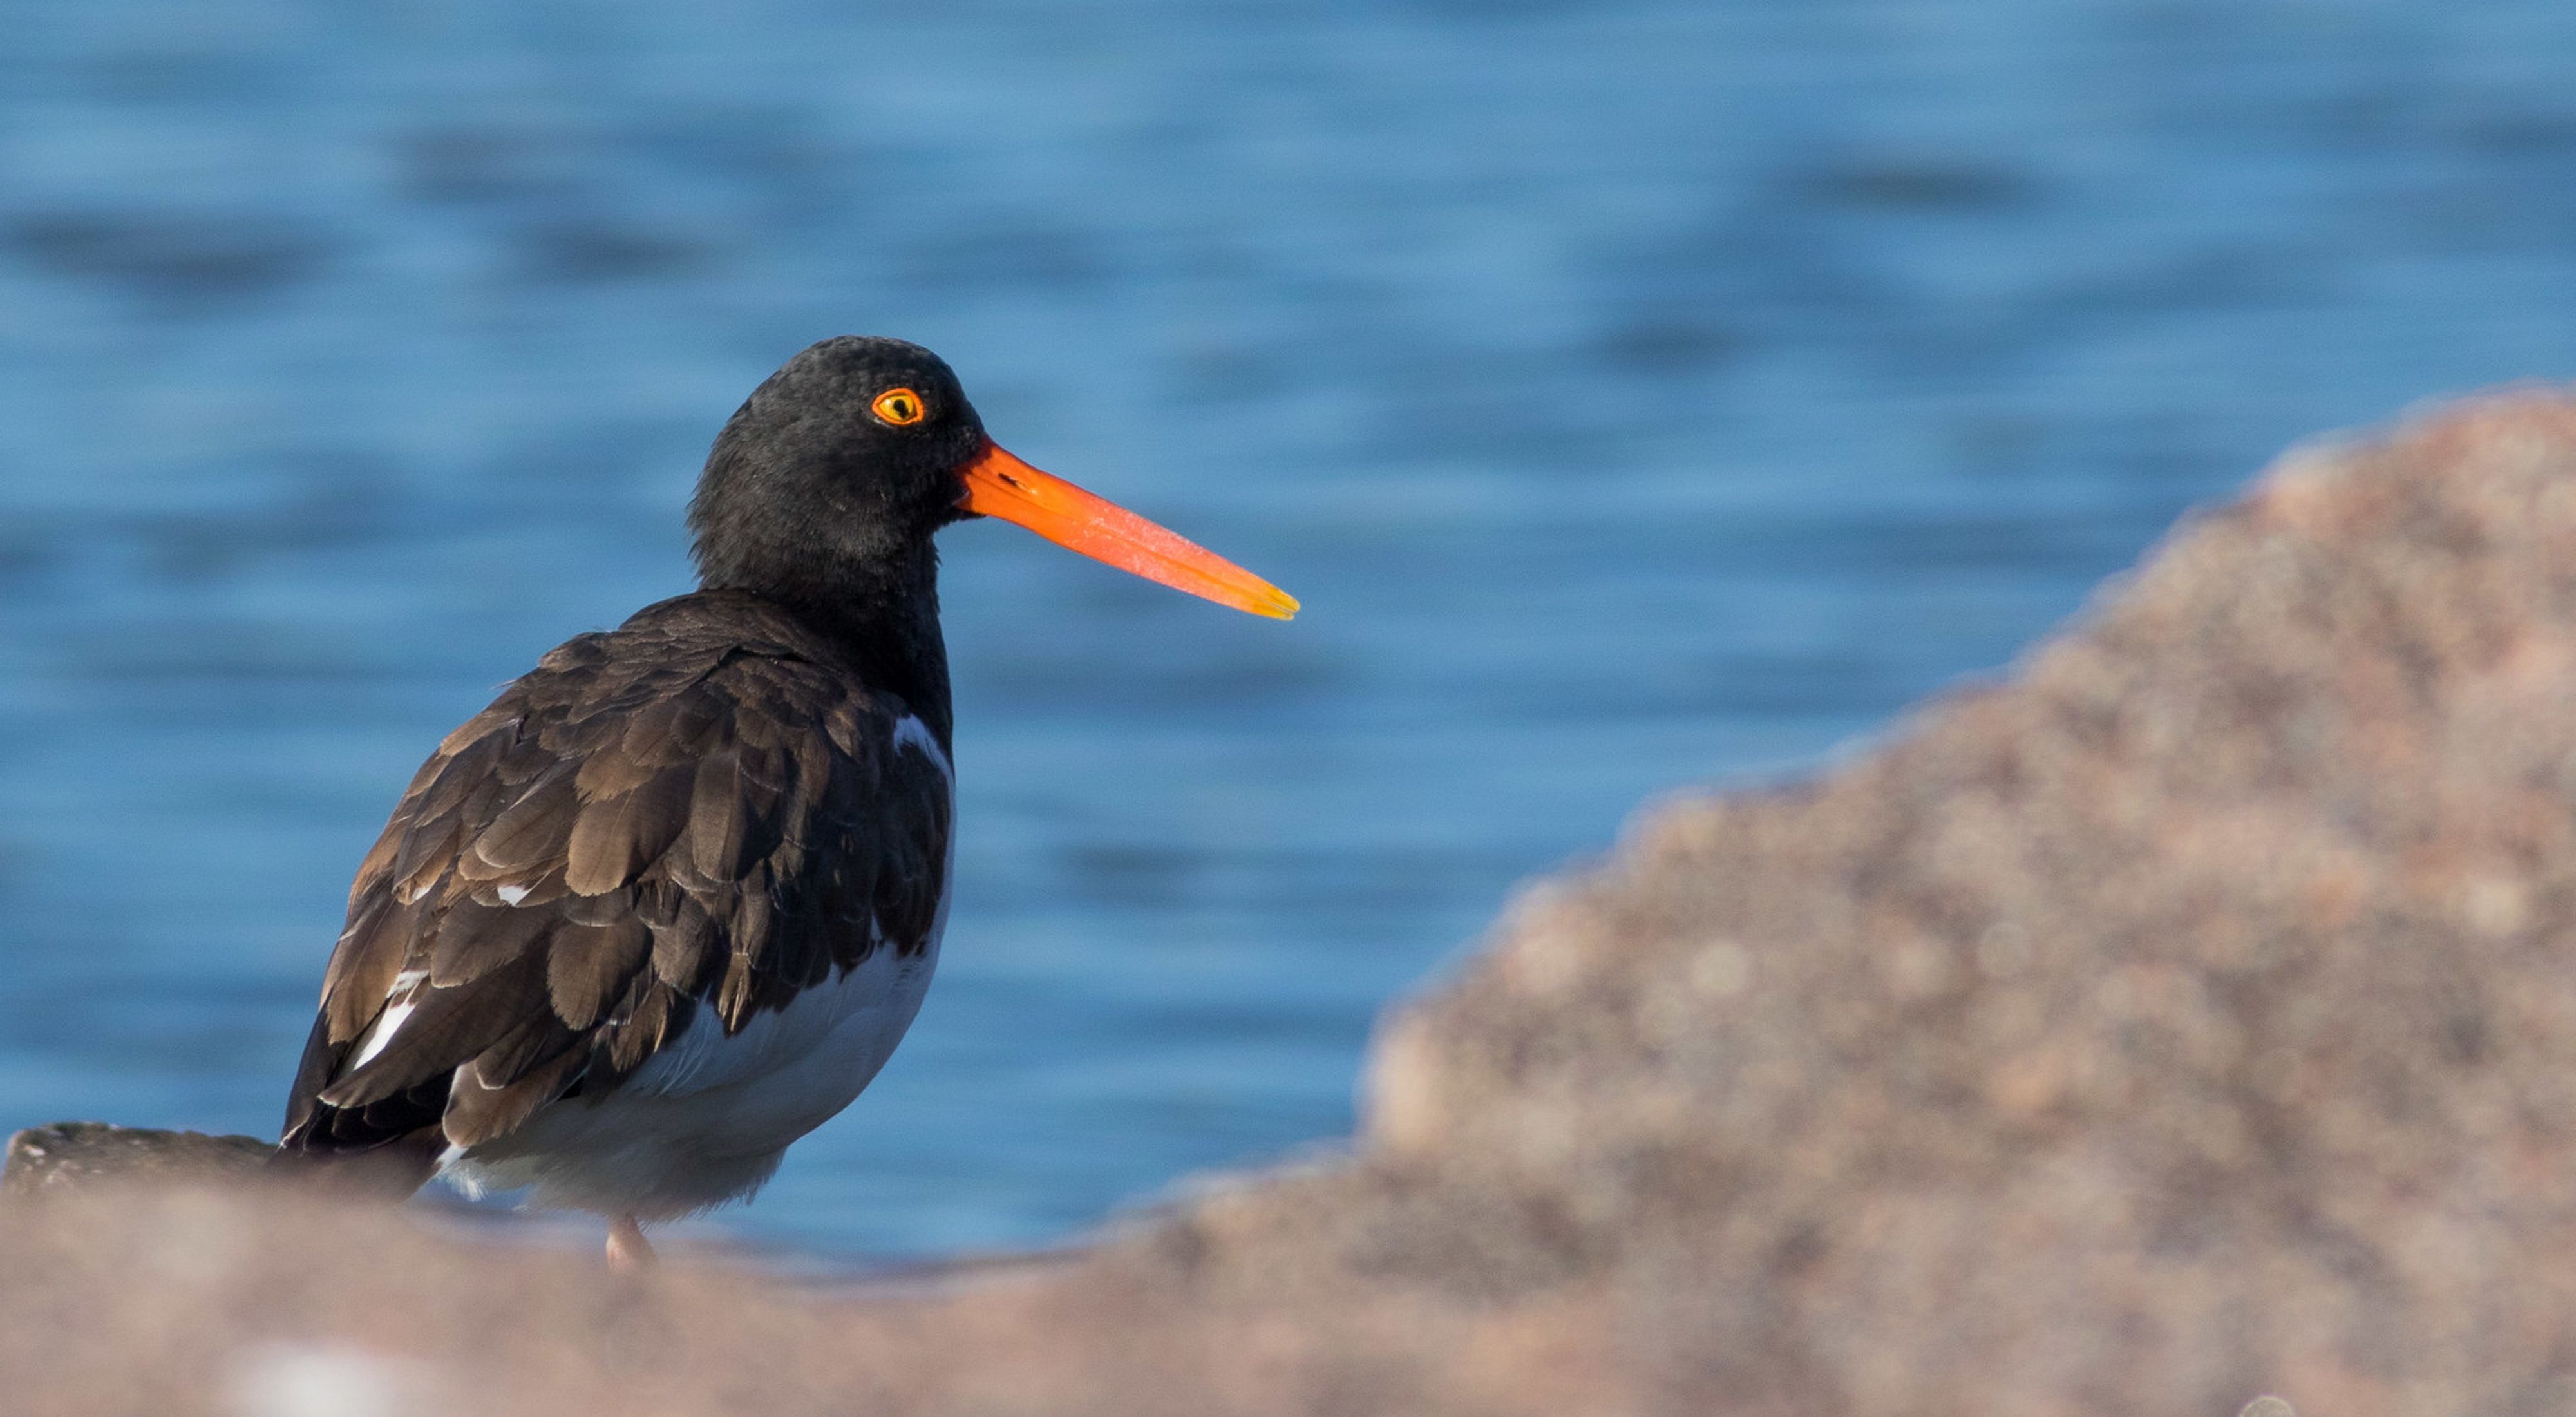 Esta ave que habita las costas se mimetiza en el entorno anidando en las arenas de la costa.